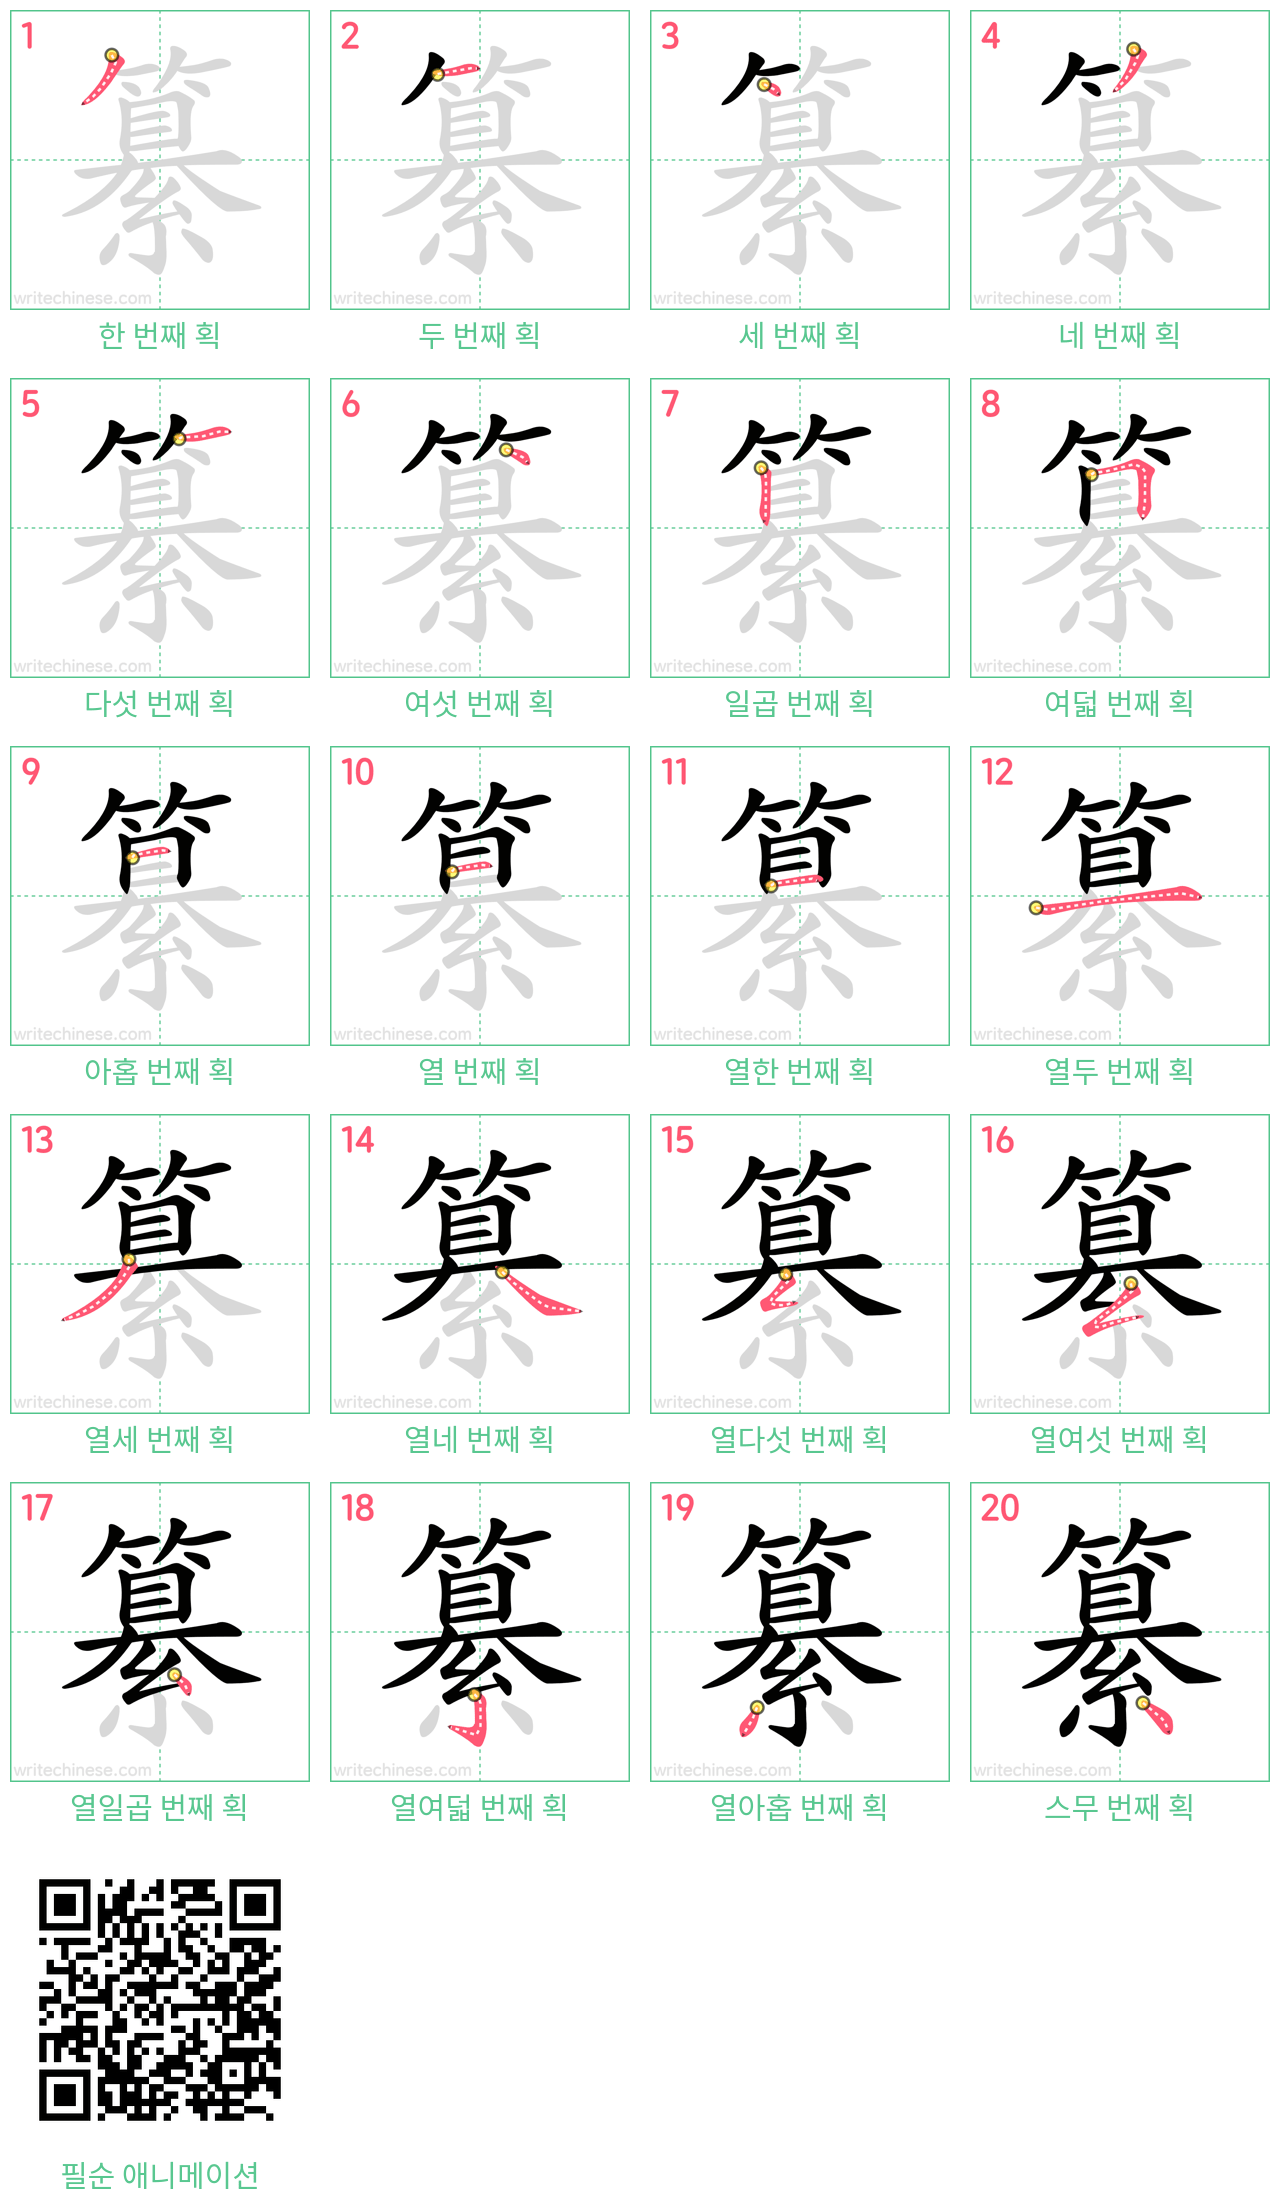 纂 step-by-step stroke order diagrams